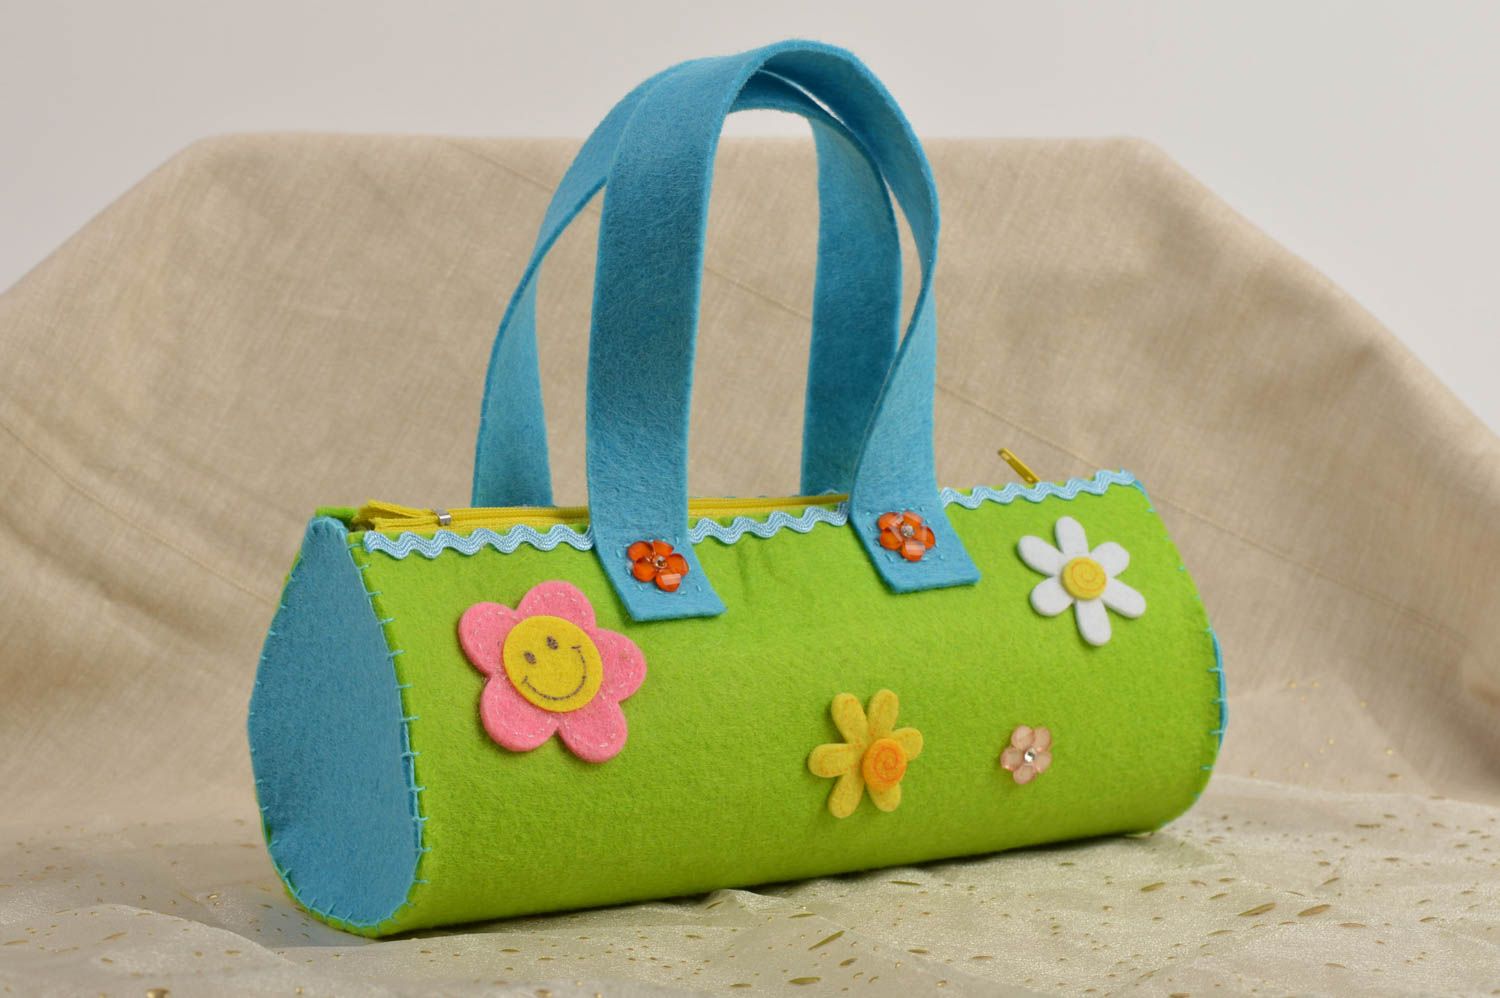 Handmade felt bag light green purse for girls wonderful present for little girl photo 1